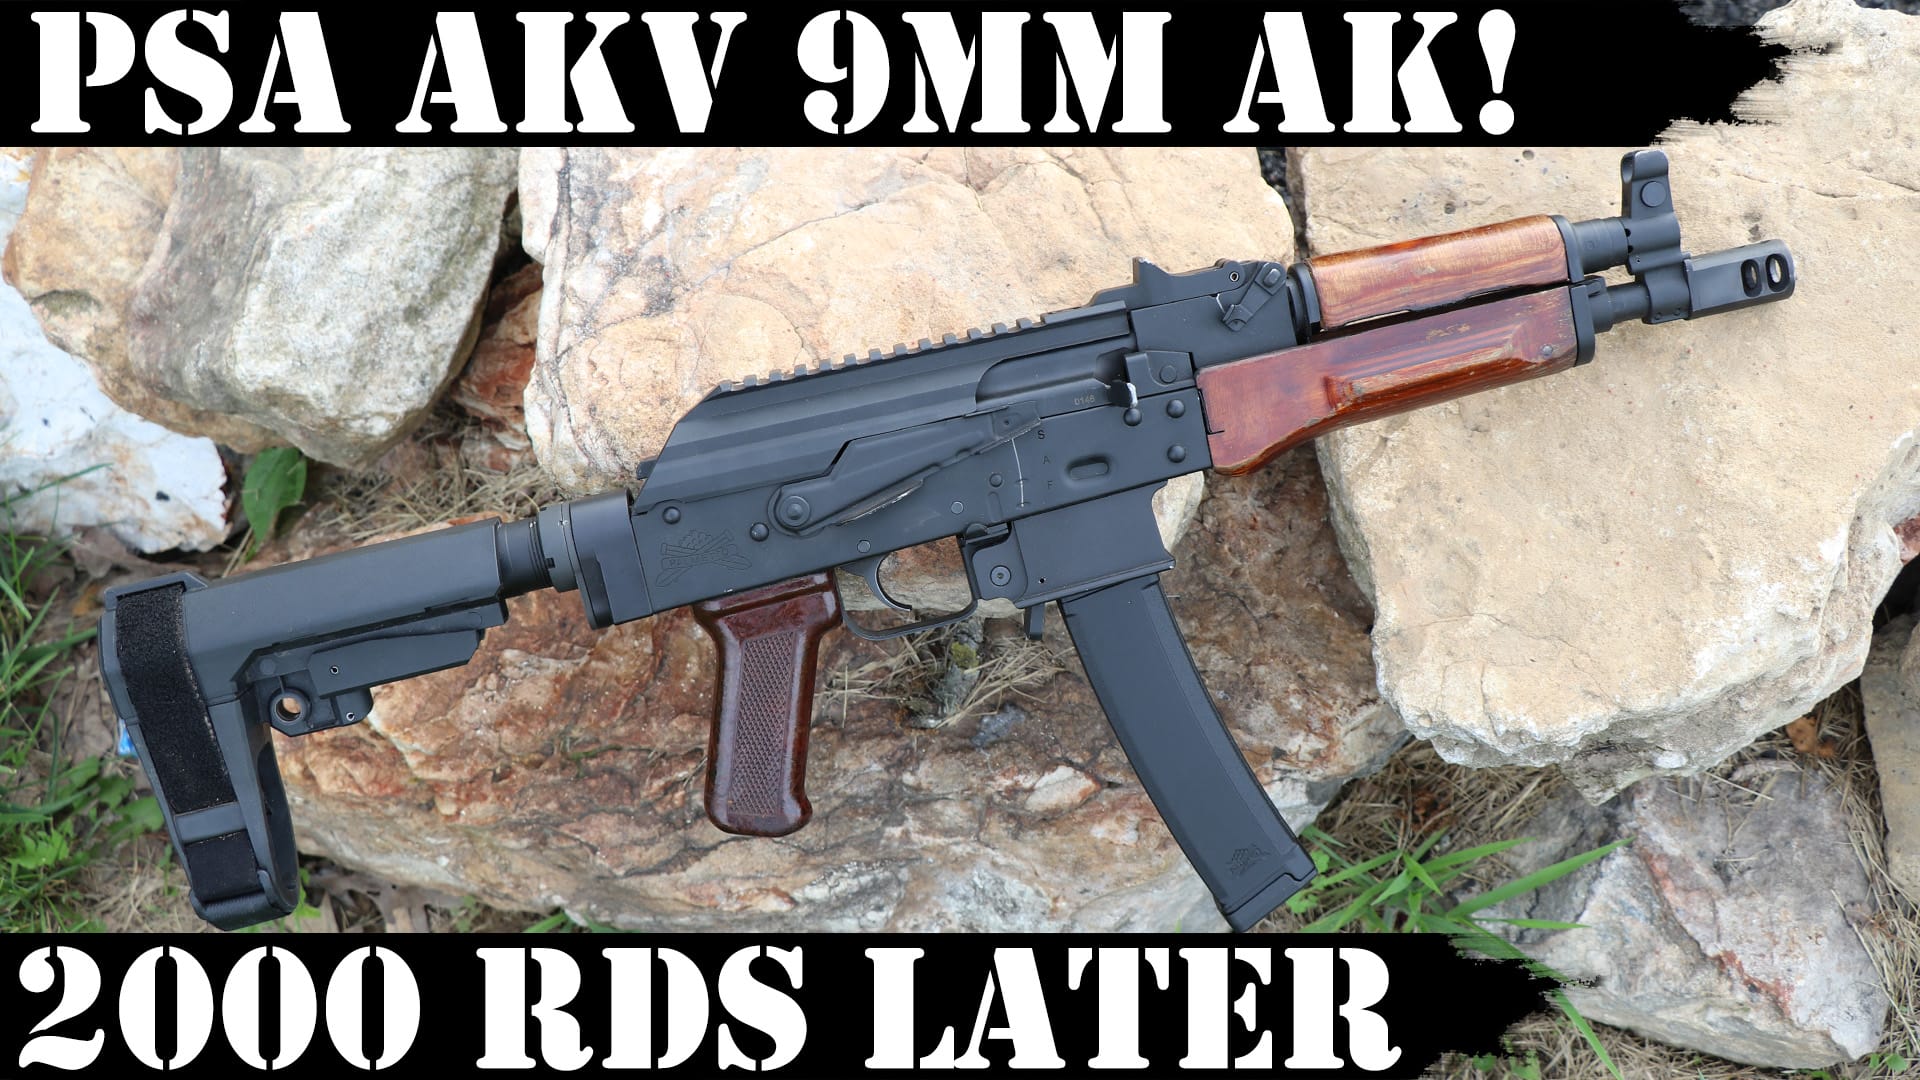 PSA AKv 9mm AK – 2,000 Rds Later!